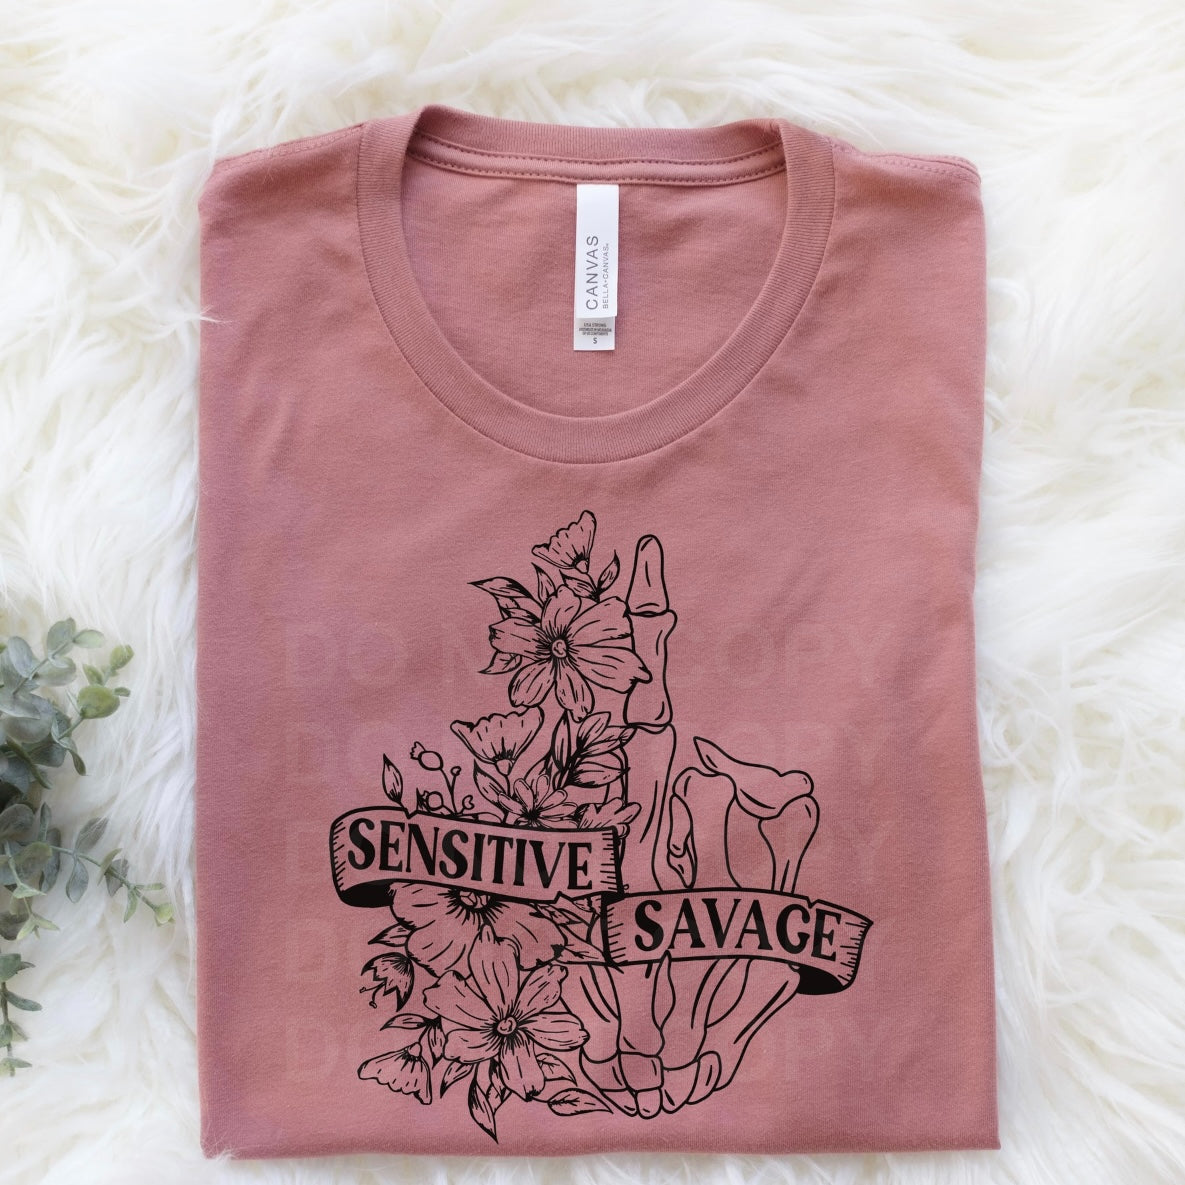 Sensitive Savage Graphic Tee or Sweatshirt - Bella Lia Boutique